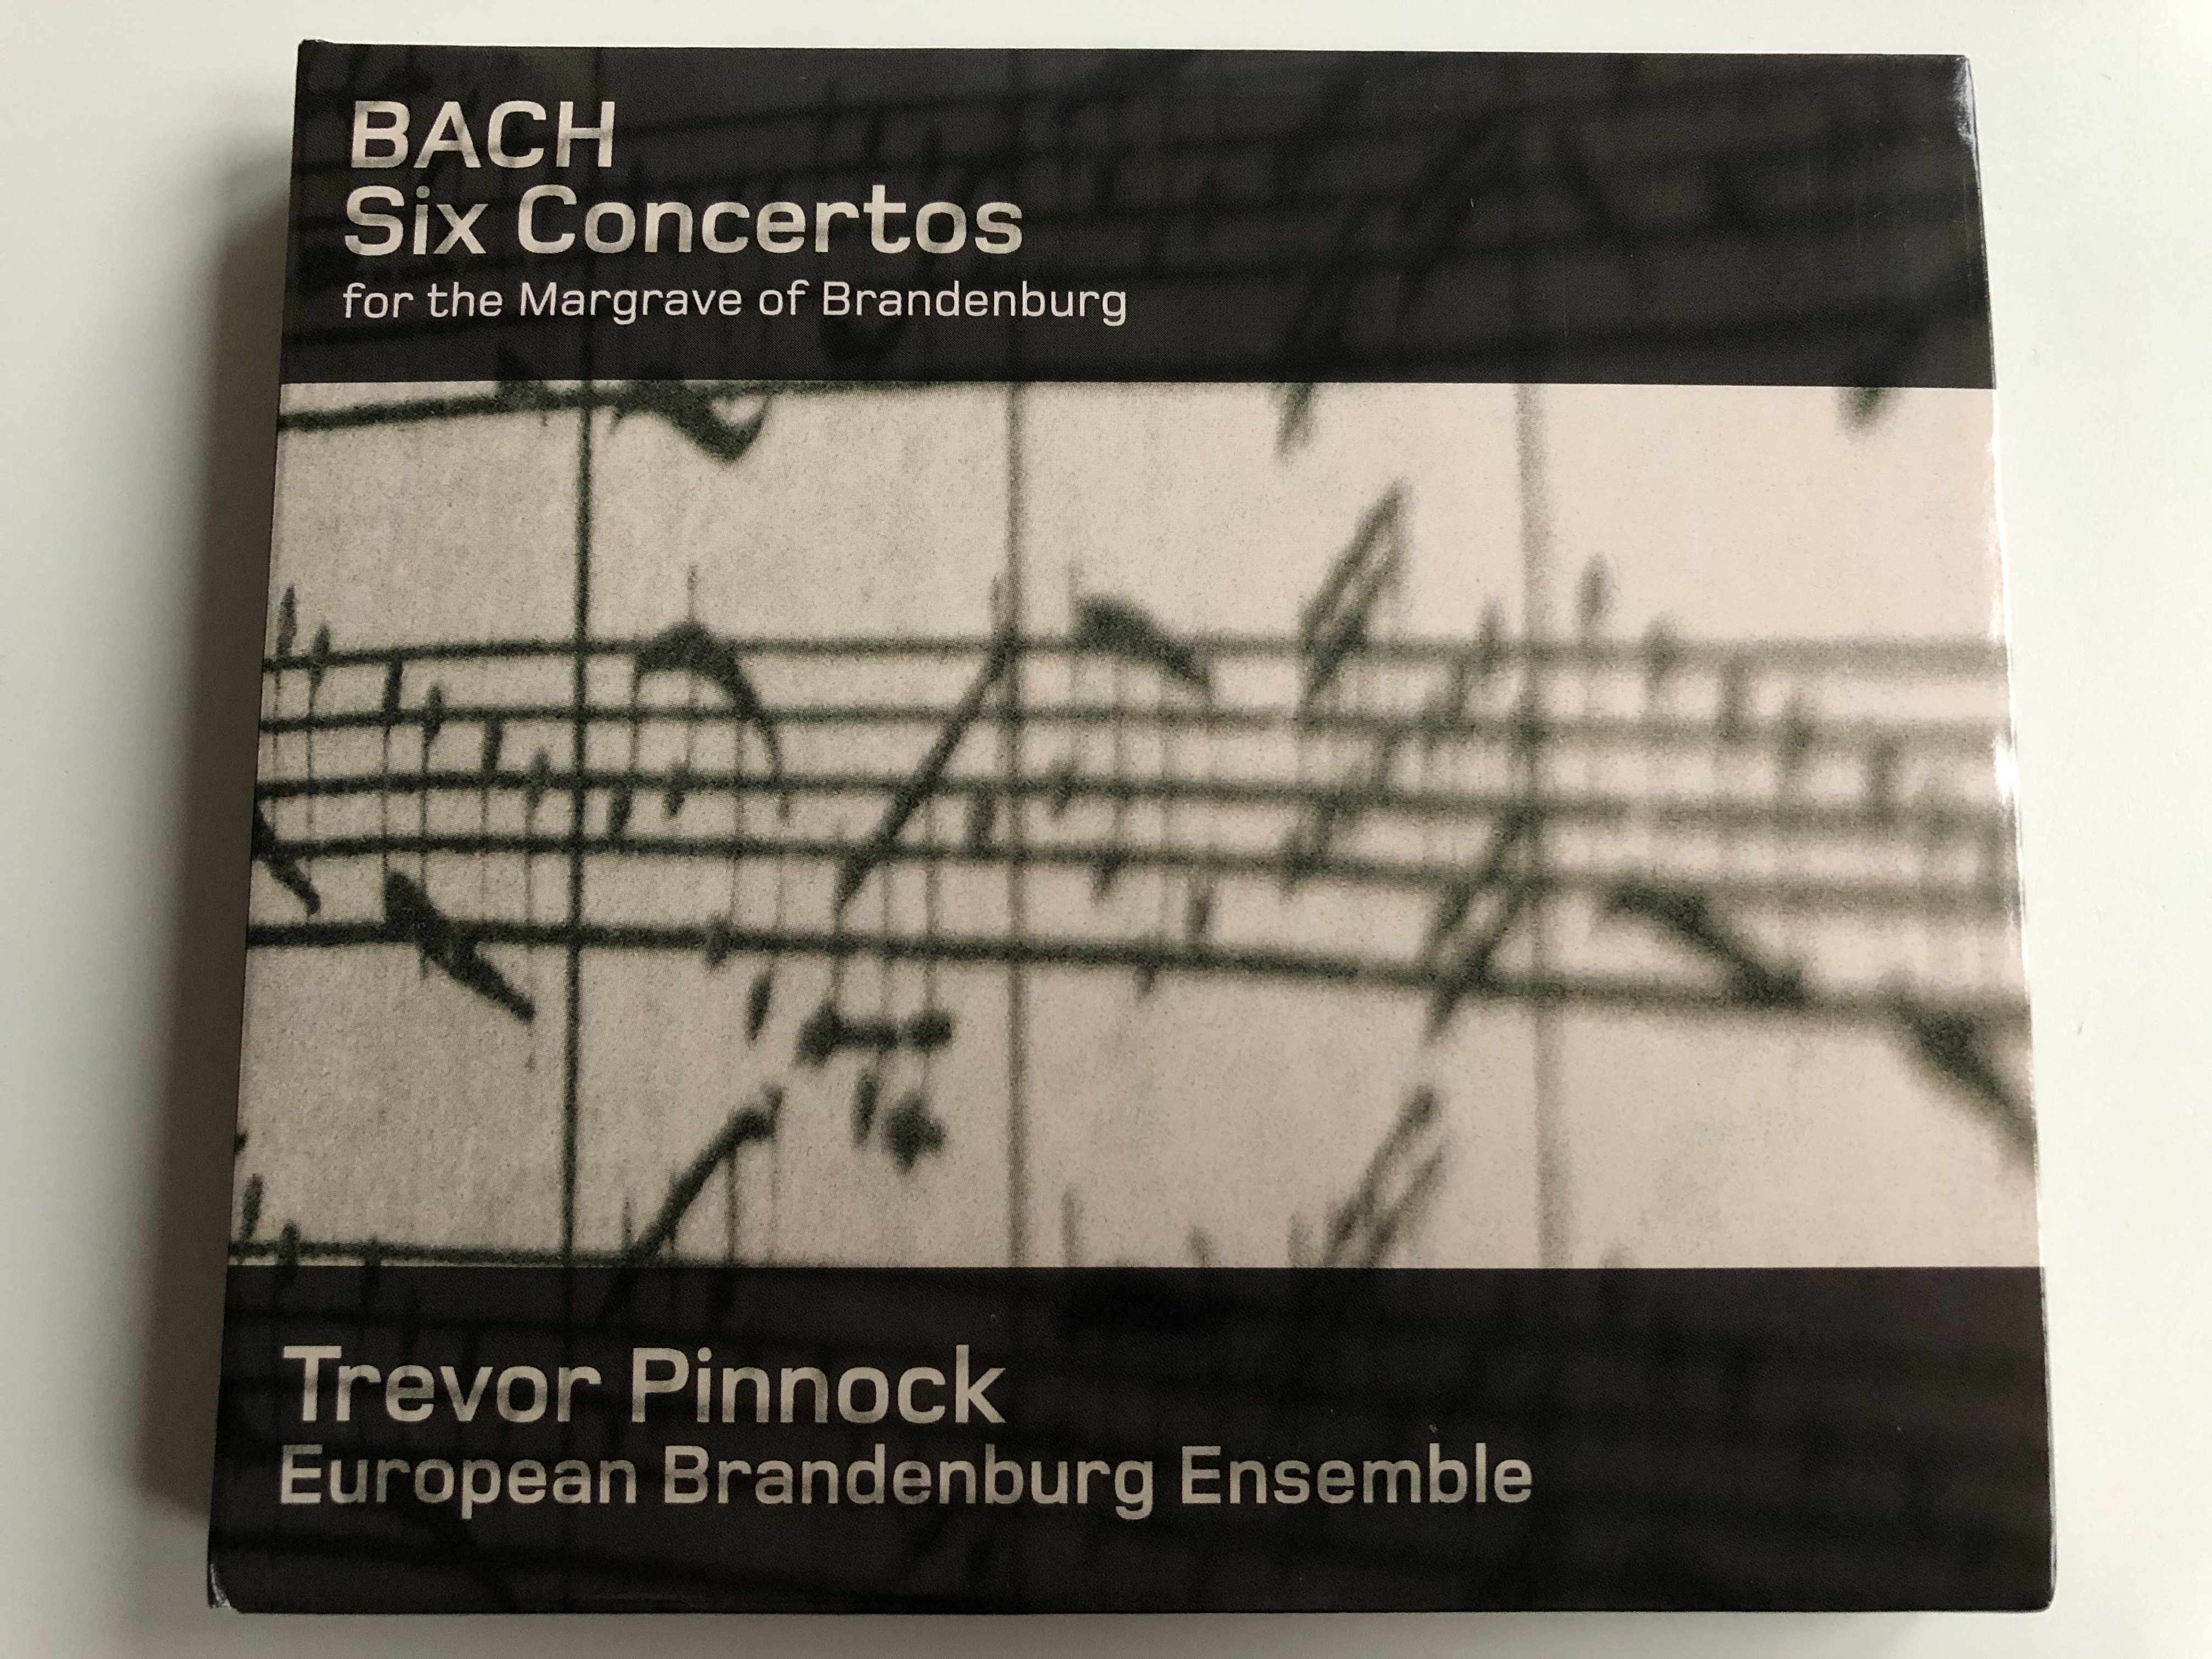 bach-six-concertos-for-the-margrave-of-brandenburg-trevor-pinnock-european-brandenburg-ensemble-avie-records-2x-audio-cd-2007-stereo-av-2119-1-.jpg